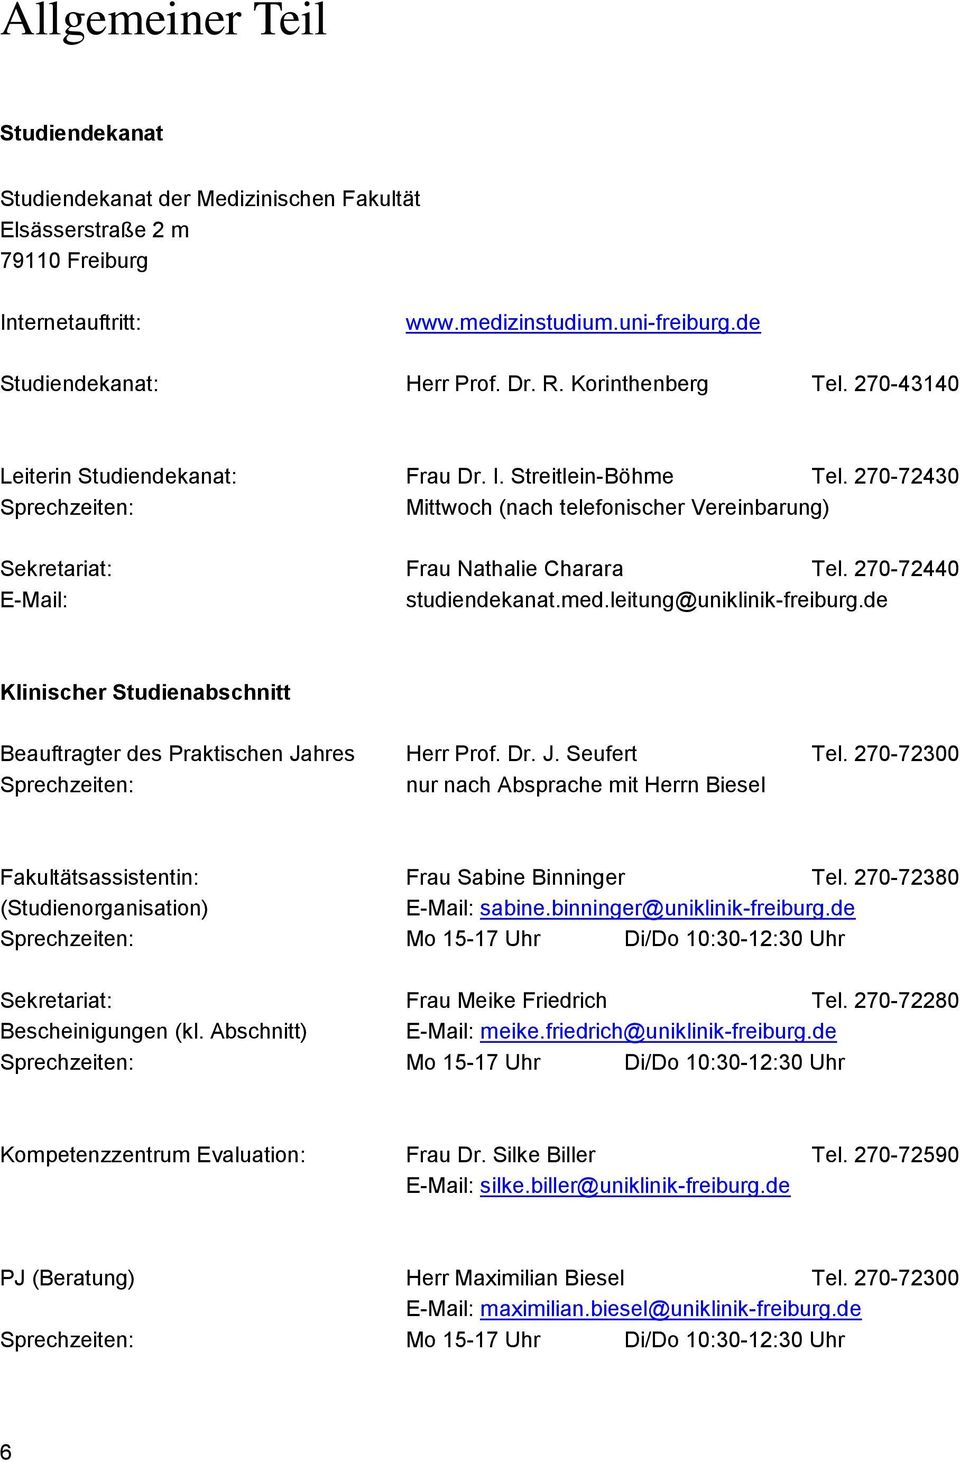 270-72440 E-Mail: studiendekanat.med.leitung@uniklinik-freiburg.de Klinischer Studienabschnitt Beauftragter des Praktischen Jahres Herr Prof. Dr. J. Seufert Tel.